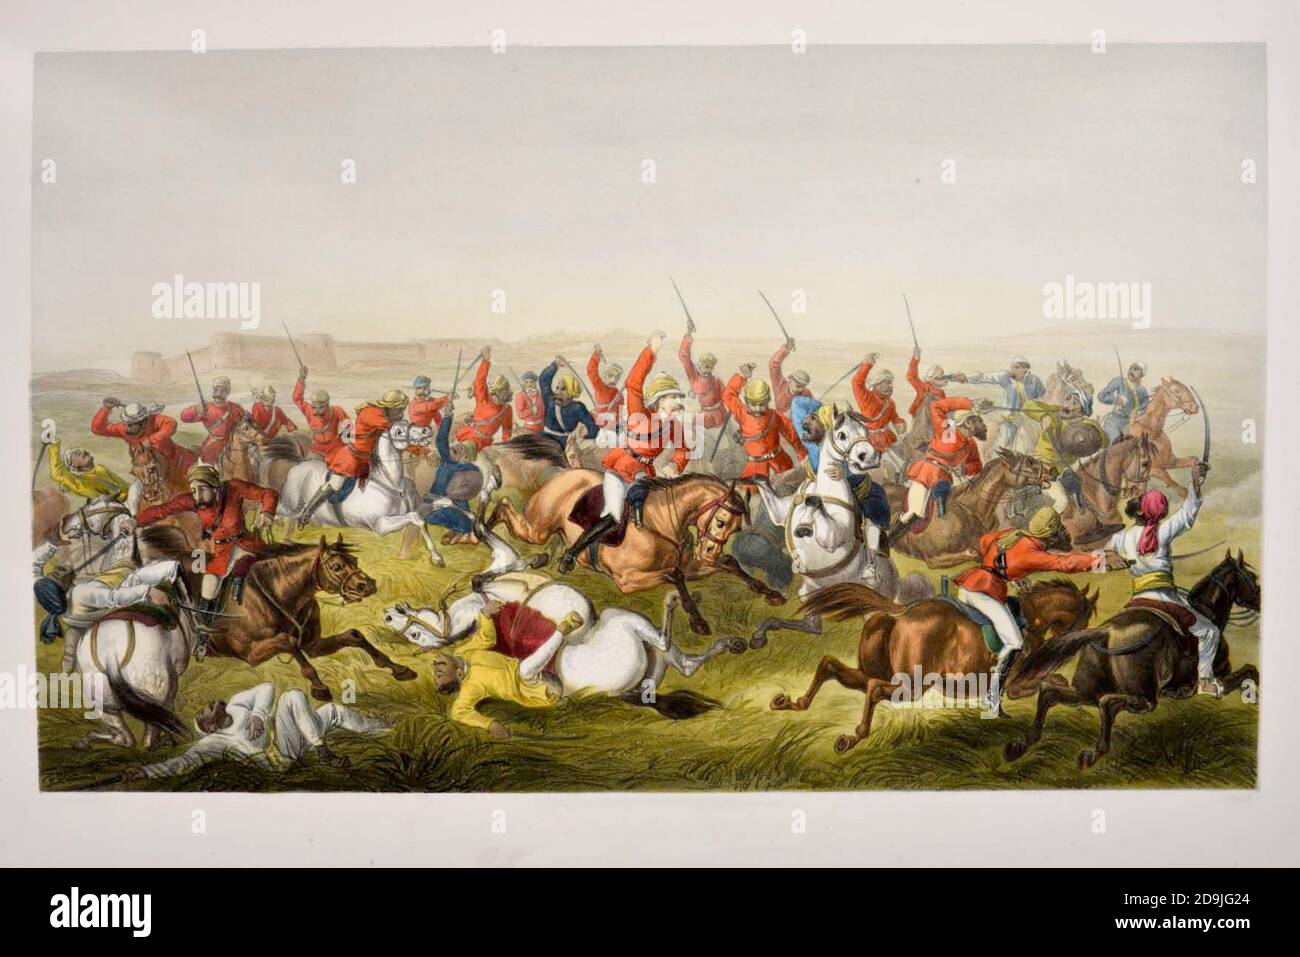 Hodson's Horse bei der Schlacht von Rhotuck [William Stephen Raikes Hodson (19. März 1821 – 11. März 1858) war ein britischer Führer der unregelmäßigen leichten Kavallerie während der indischen Rebellion von 1857, allgemein als die indische Meuterei oder die Sepoy-Meuterei bezeichnet. Er war bekannt als 'Hodson of Hodson's Horse'] Lithographie aus dem Buch Campaign in India 1857-58 Illustrating the Military Operations before Delhi ; 26 handkolorierte lithographierte Platten. Von George Francklin Atkinson Published by Day & Son Lithographers to the Queen in 1859 Stockfoto